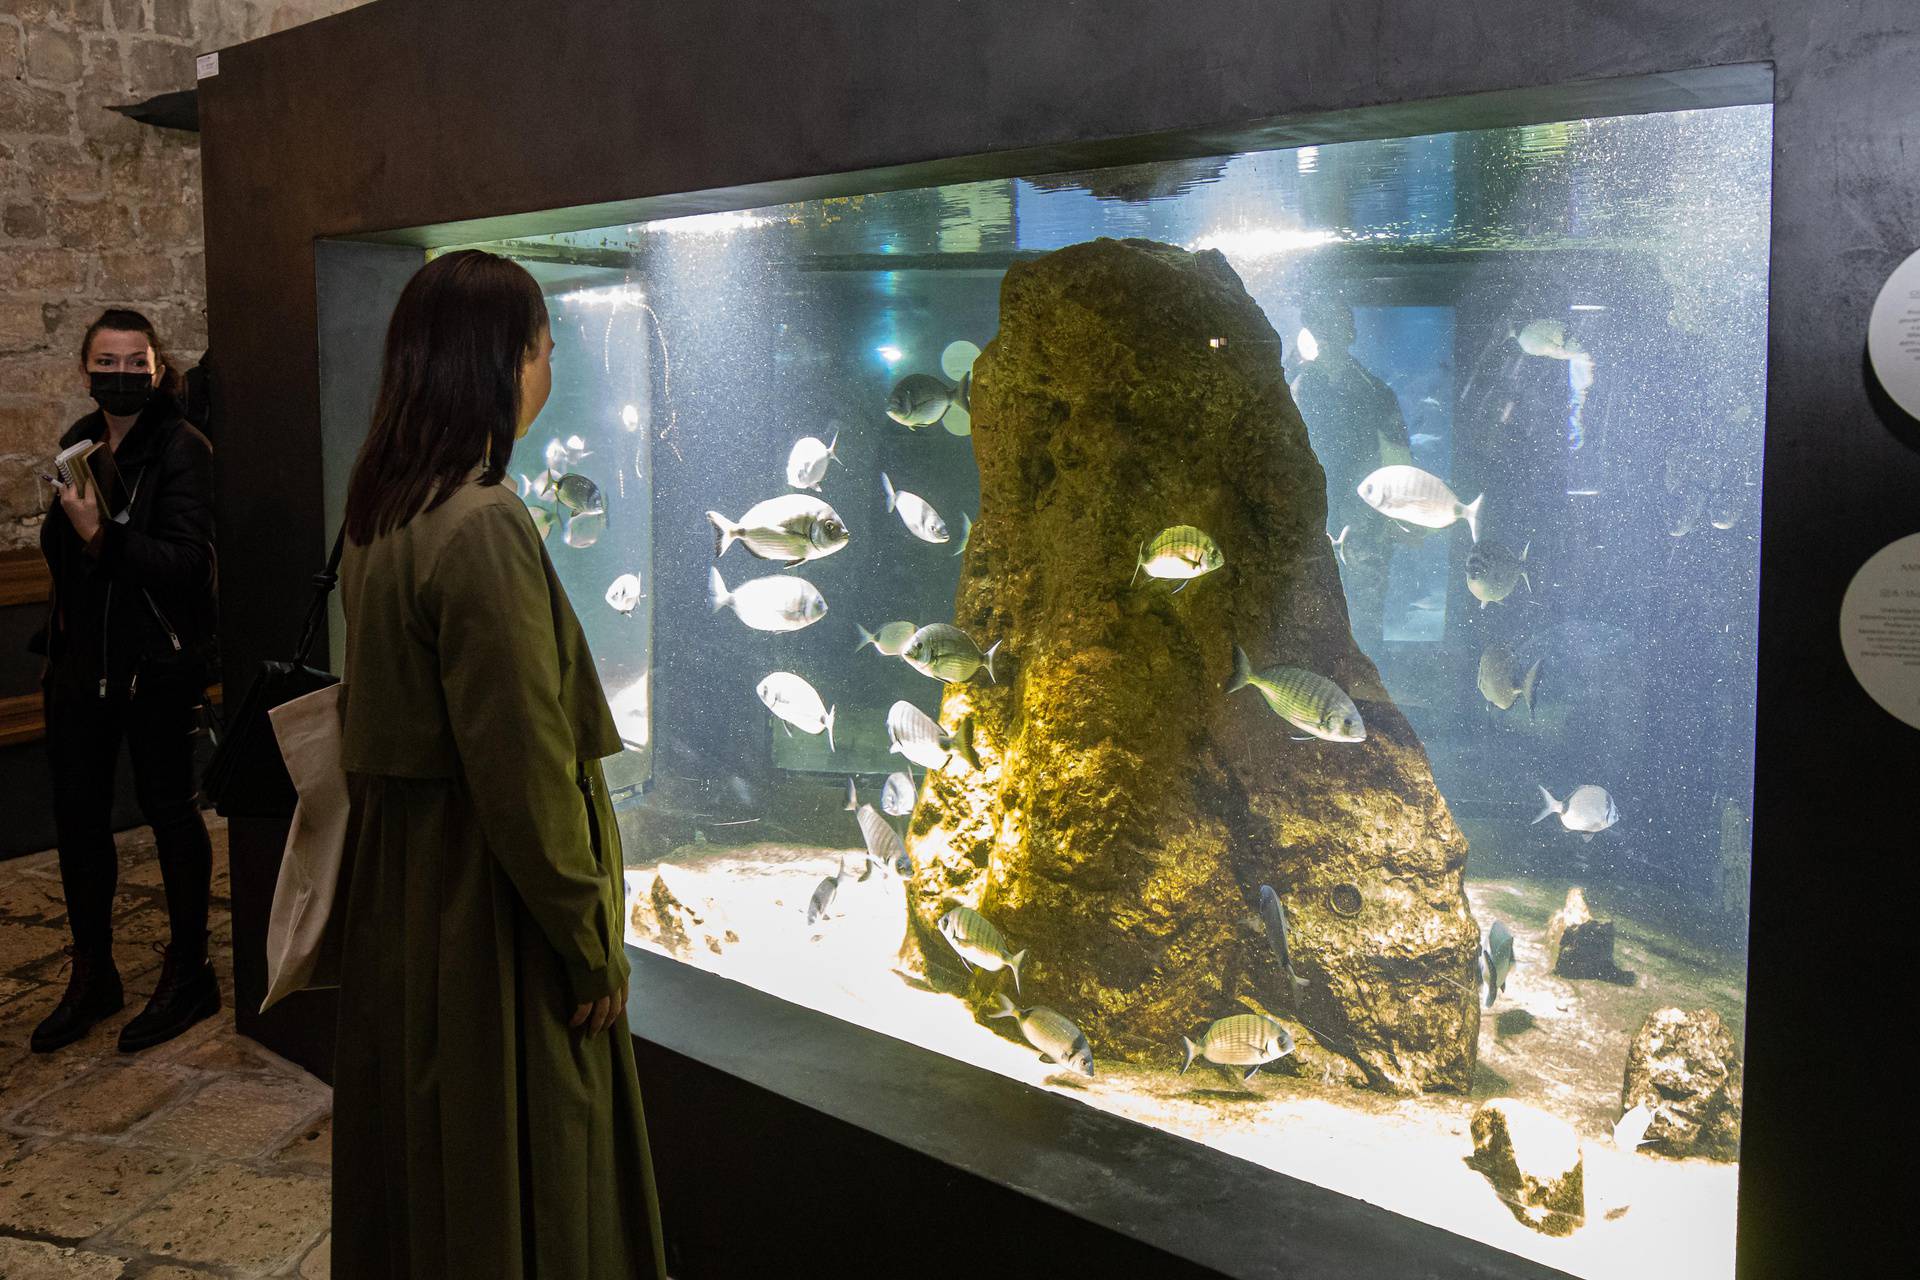 Nakon 18 mjeseci otvoren je obnovljeni dubrovački Akvarij